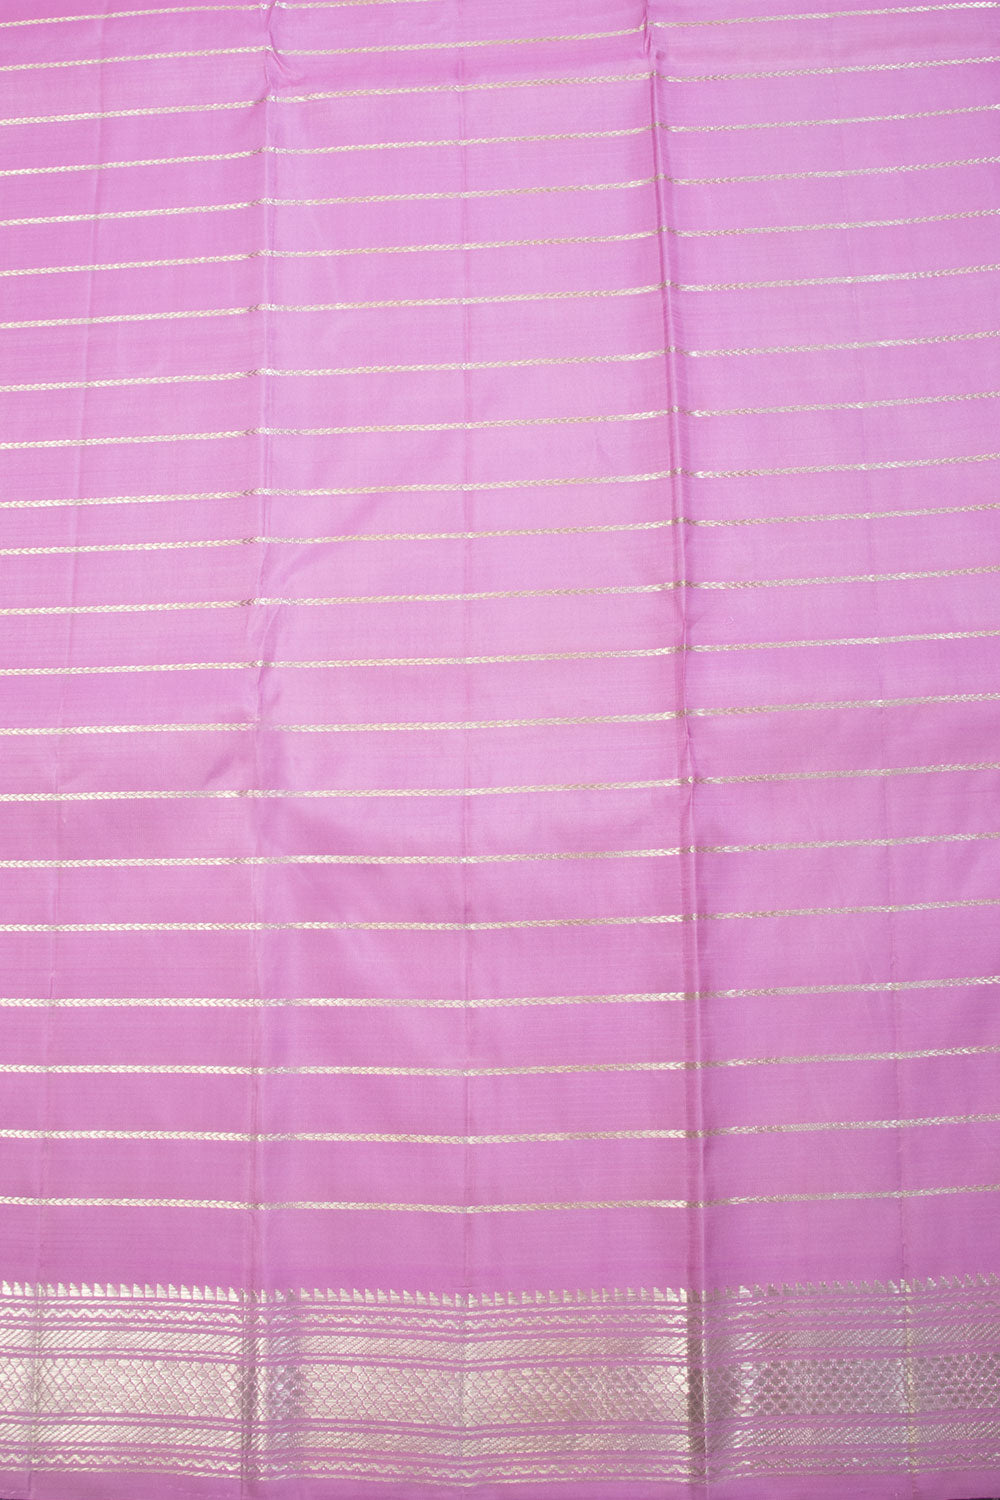 Beige dual tone Handloom Kanjivaram silk saree - Avishya